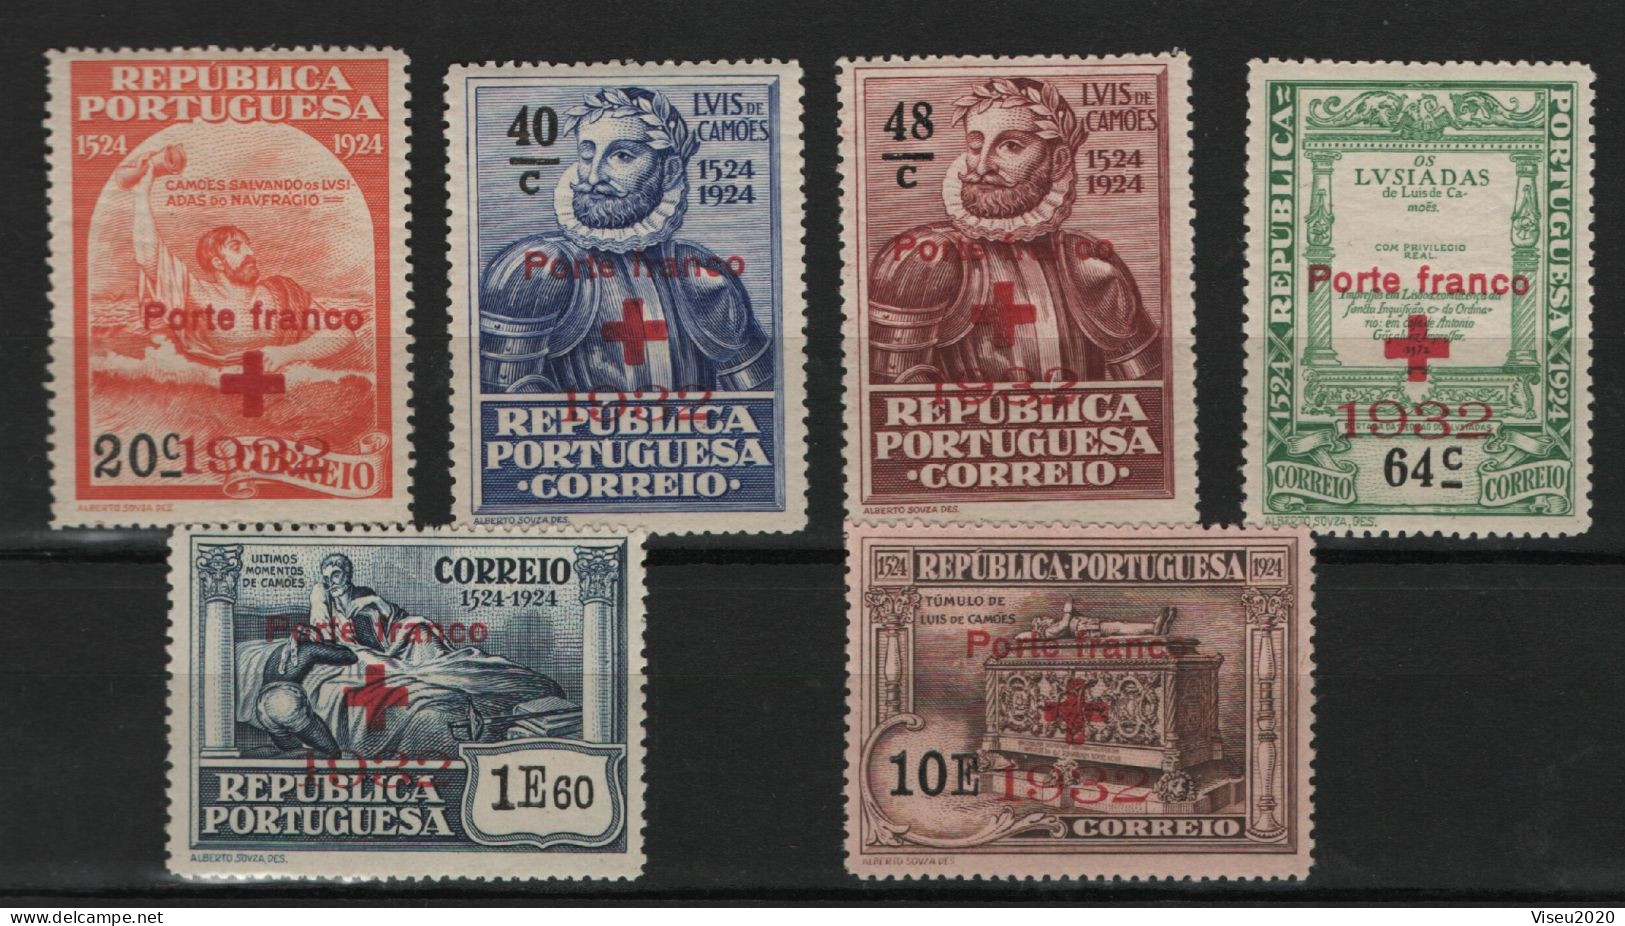 Portugal Porte Franco 1932 - Selos Do 4º Centenário Do Nascimento De Luís De Camões (1924) OVP - Set Completo - Nuevos